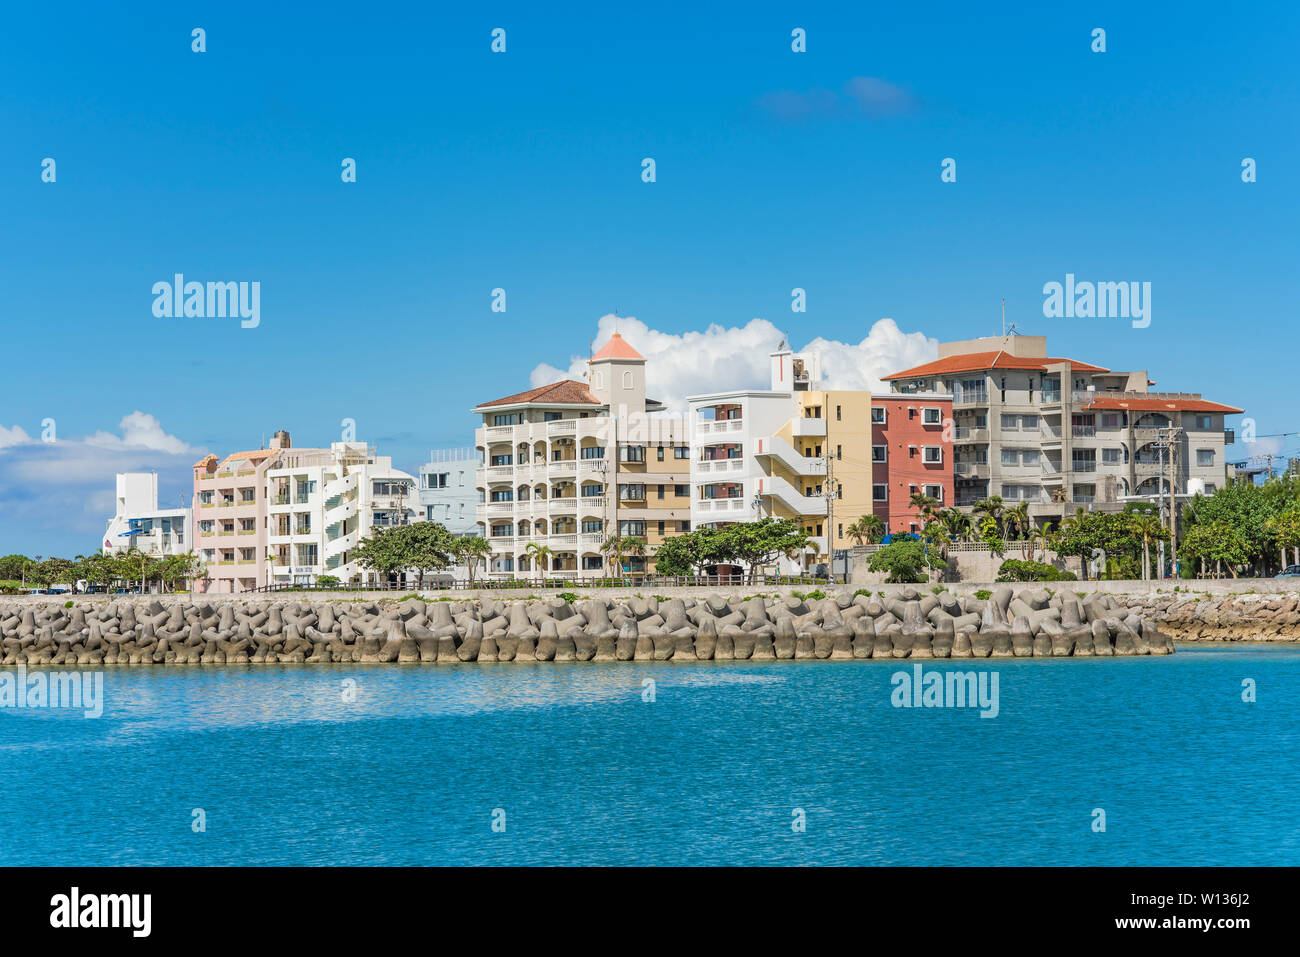 Condominio Chatanmonogatari Bayside e Harbour park nelle vicinanze del villaggio americano in Chatan città di Okinawa. Foto Stock